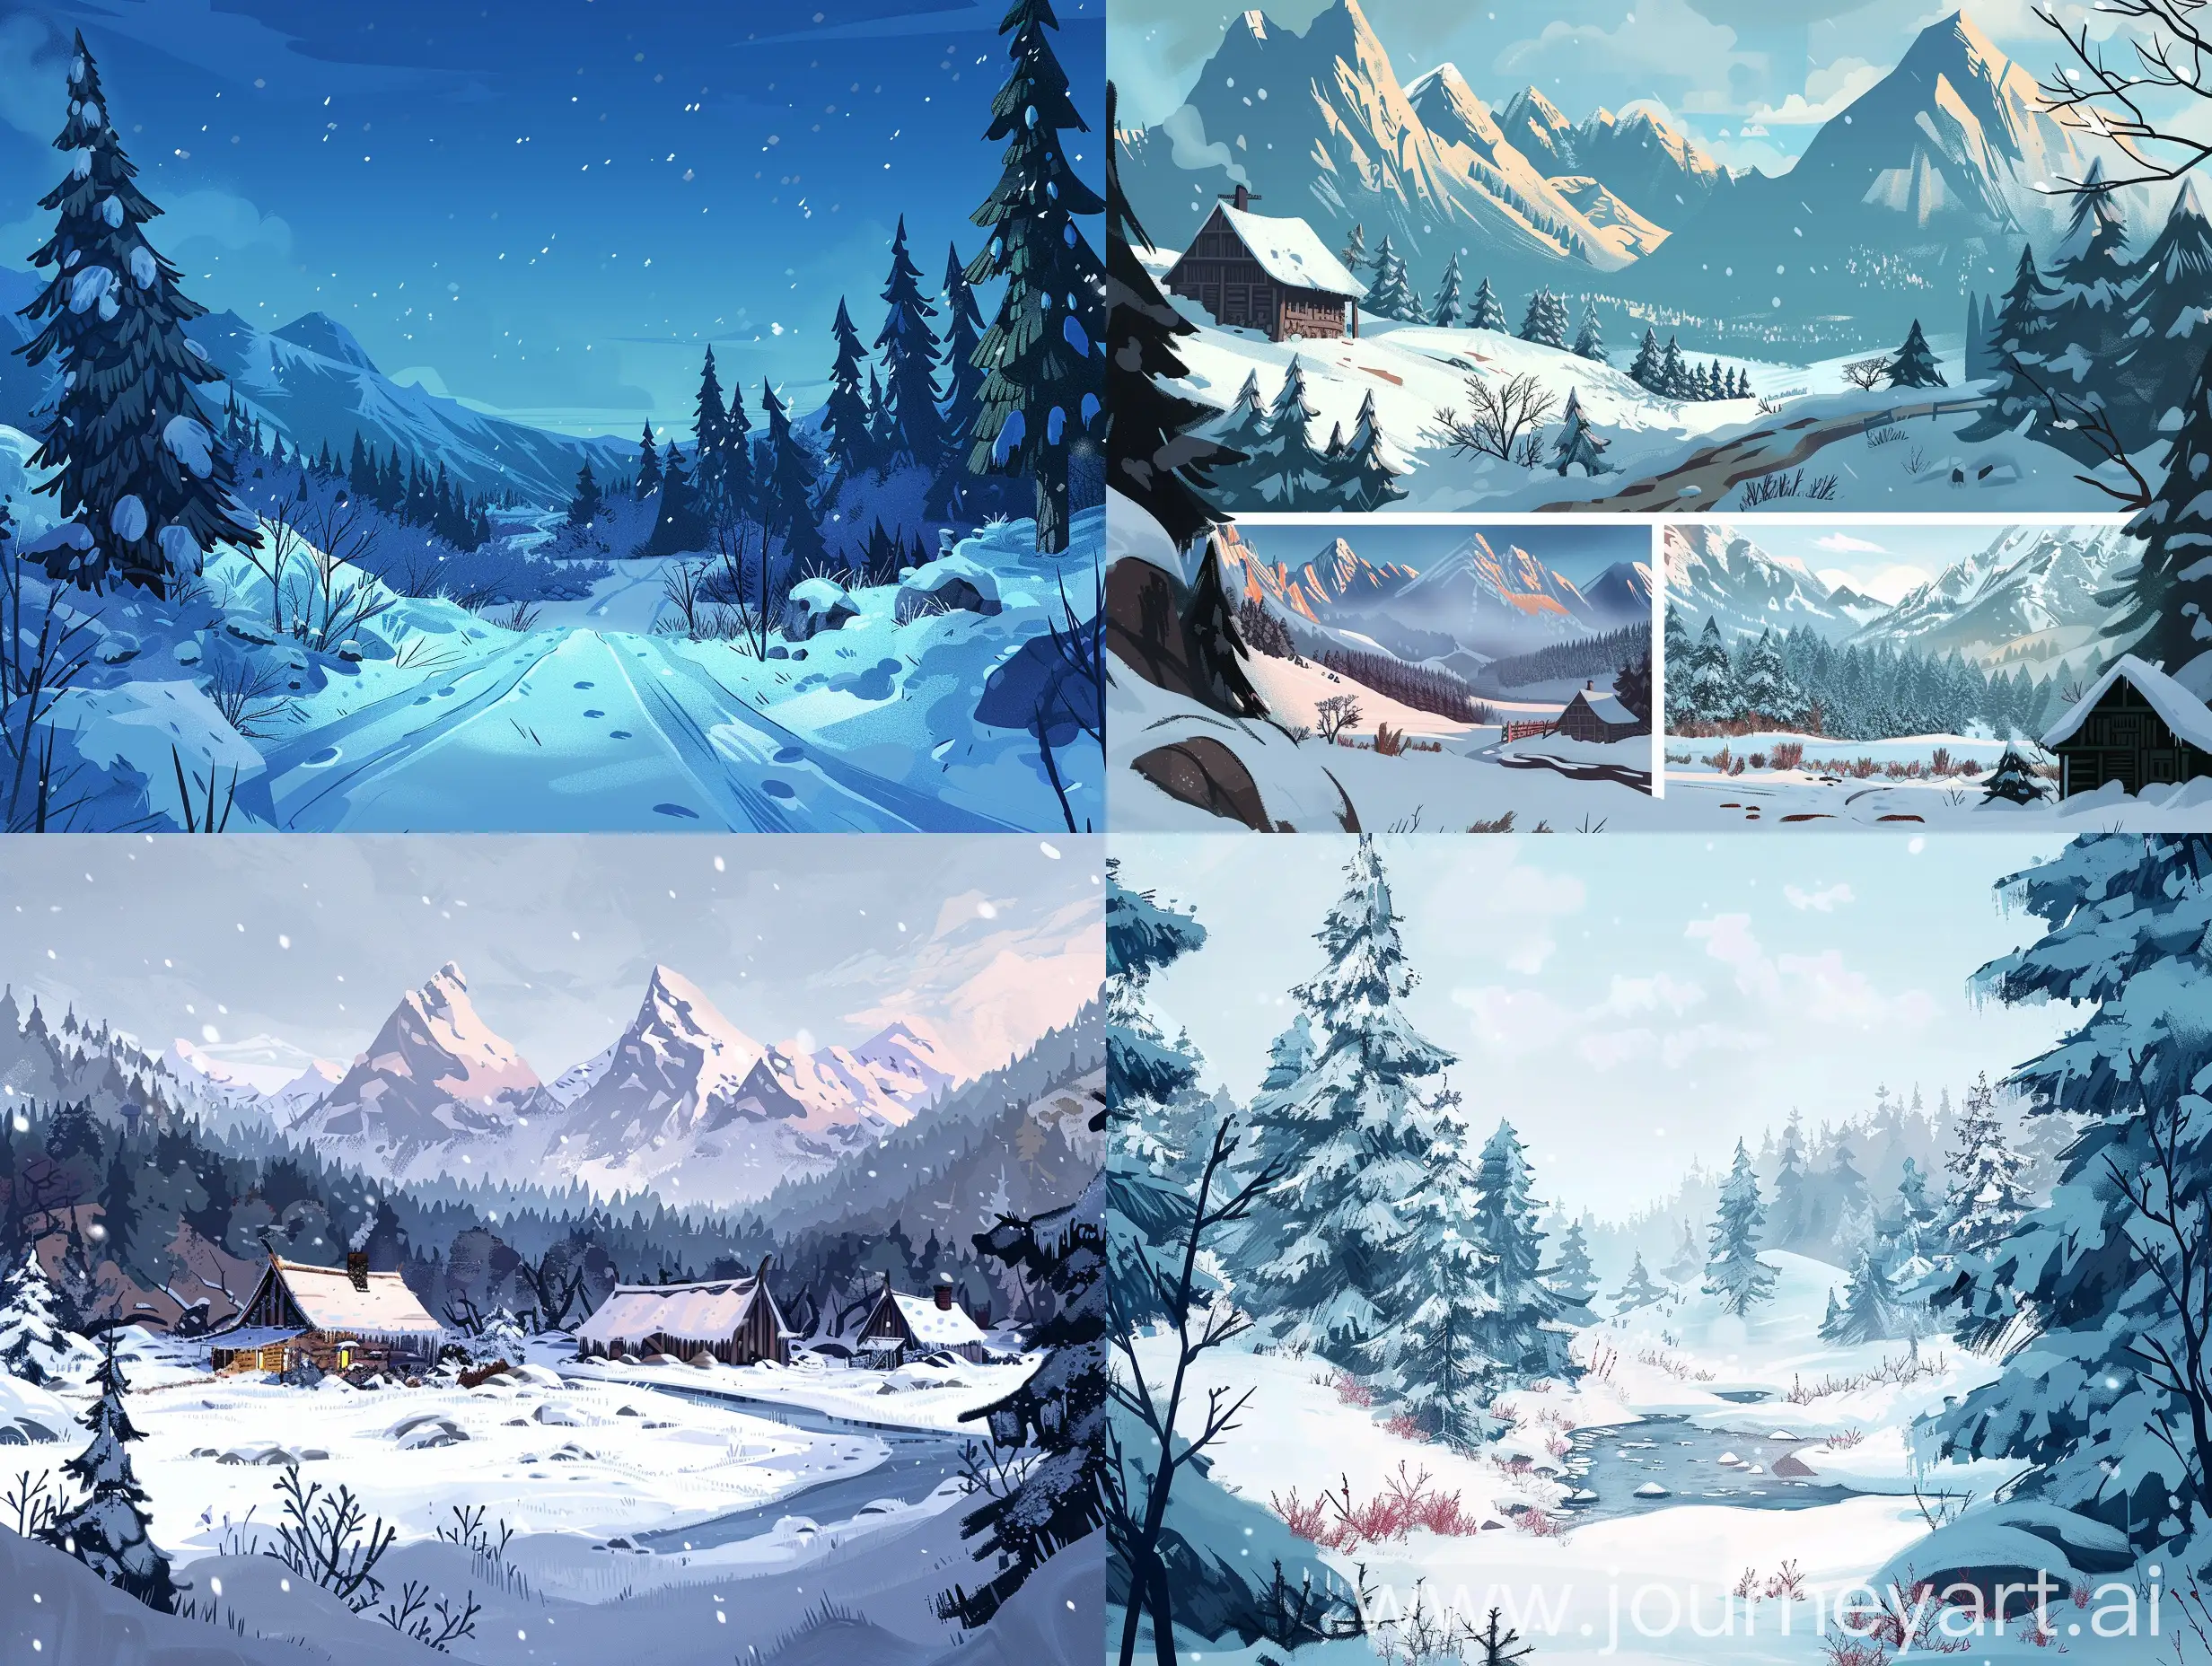 Нарисуй зимние пейзажи как в игре "The long dark". Хотелось бы, чтобы совпадали и места (как в игре), и цветовая гамма, и стиль